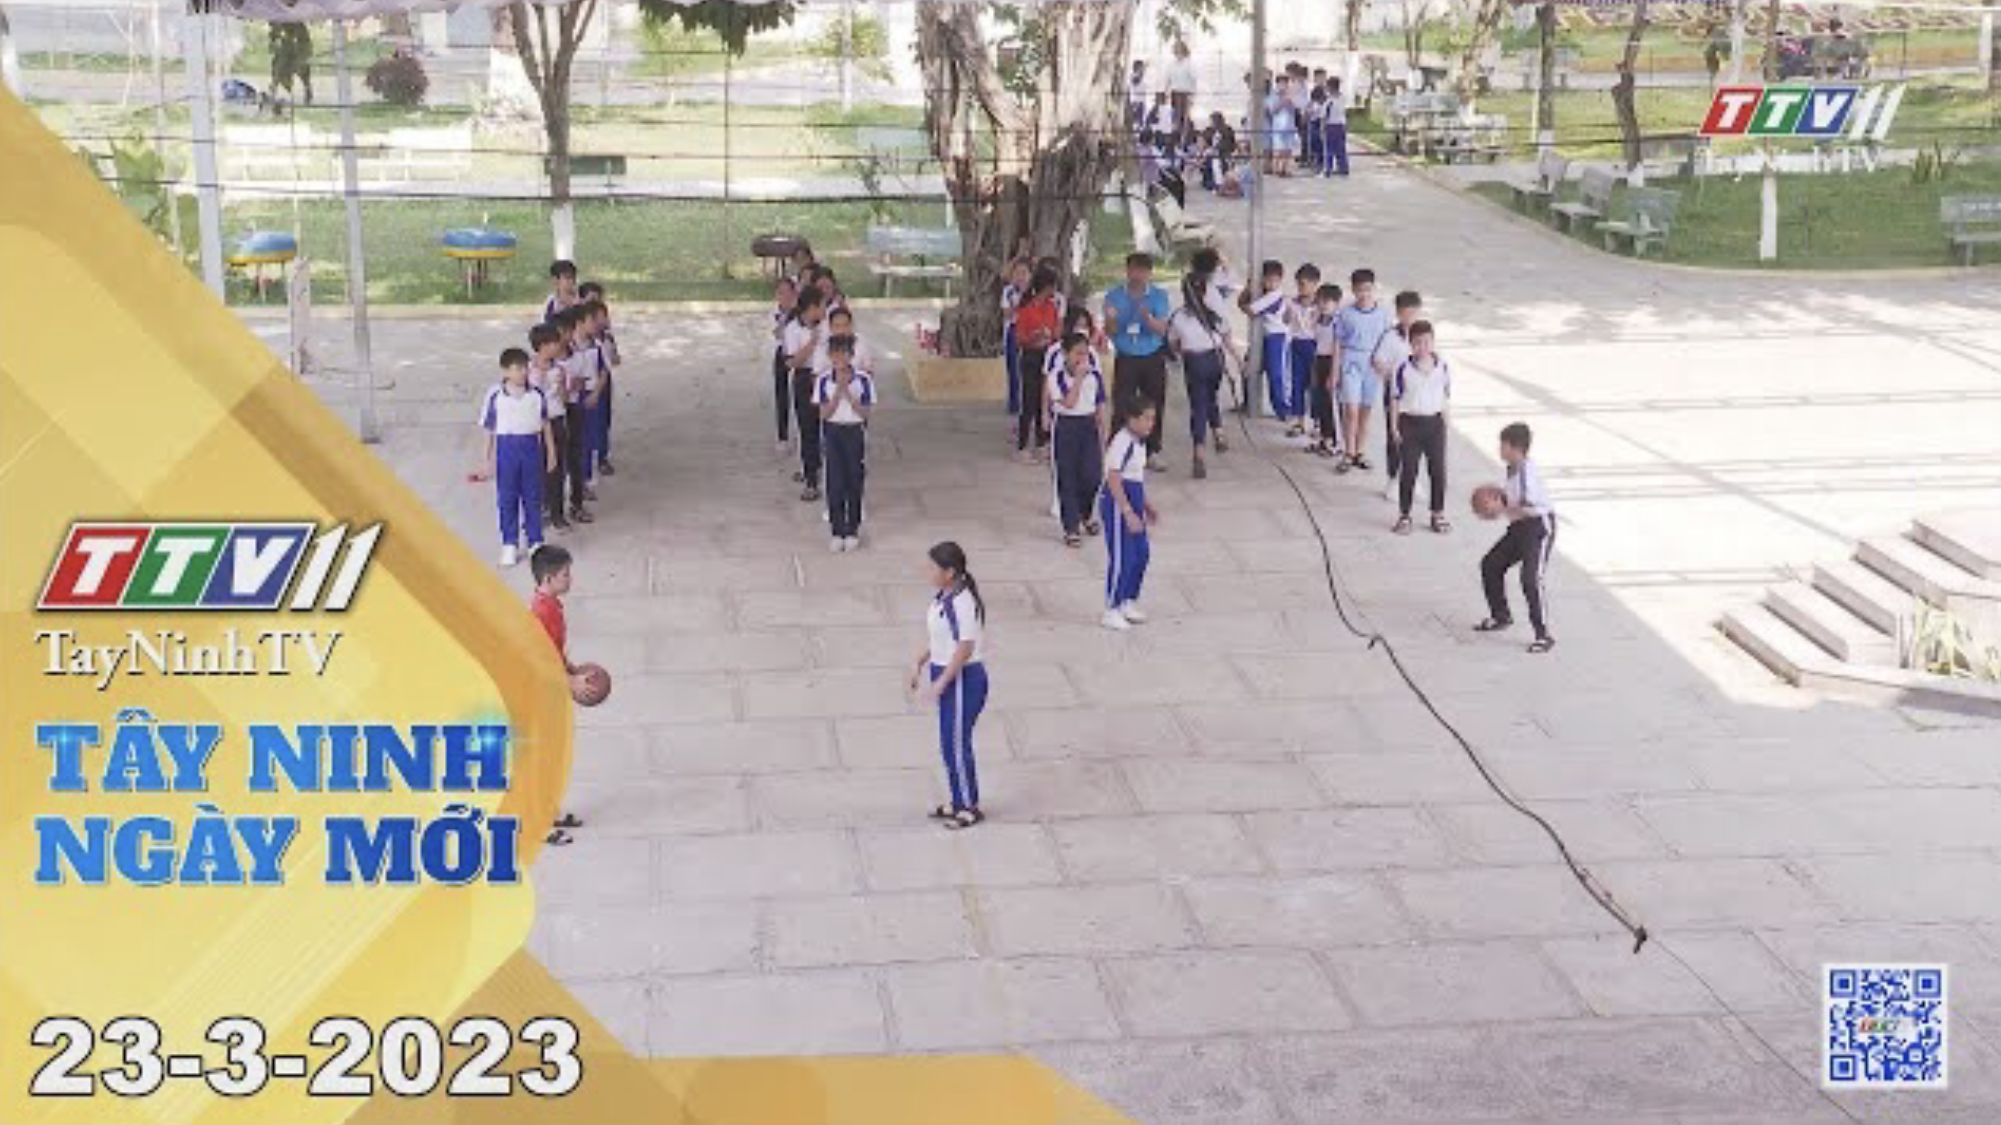 Tây Ninh ngày mới 23-3-2023 | Tin tức hôm nay | TayNinhTV